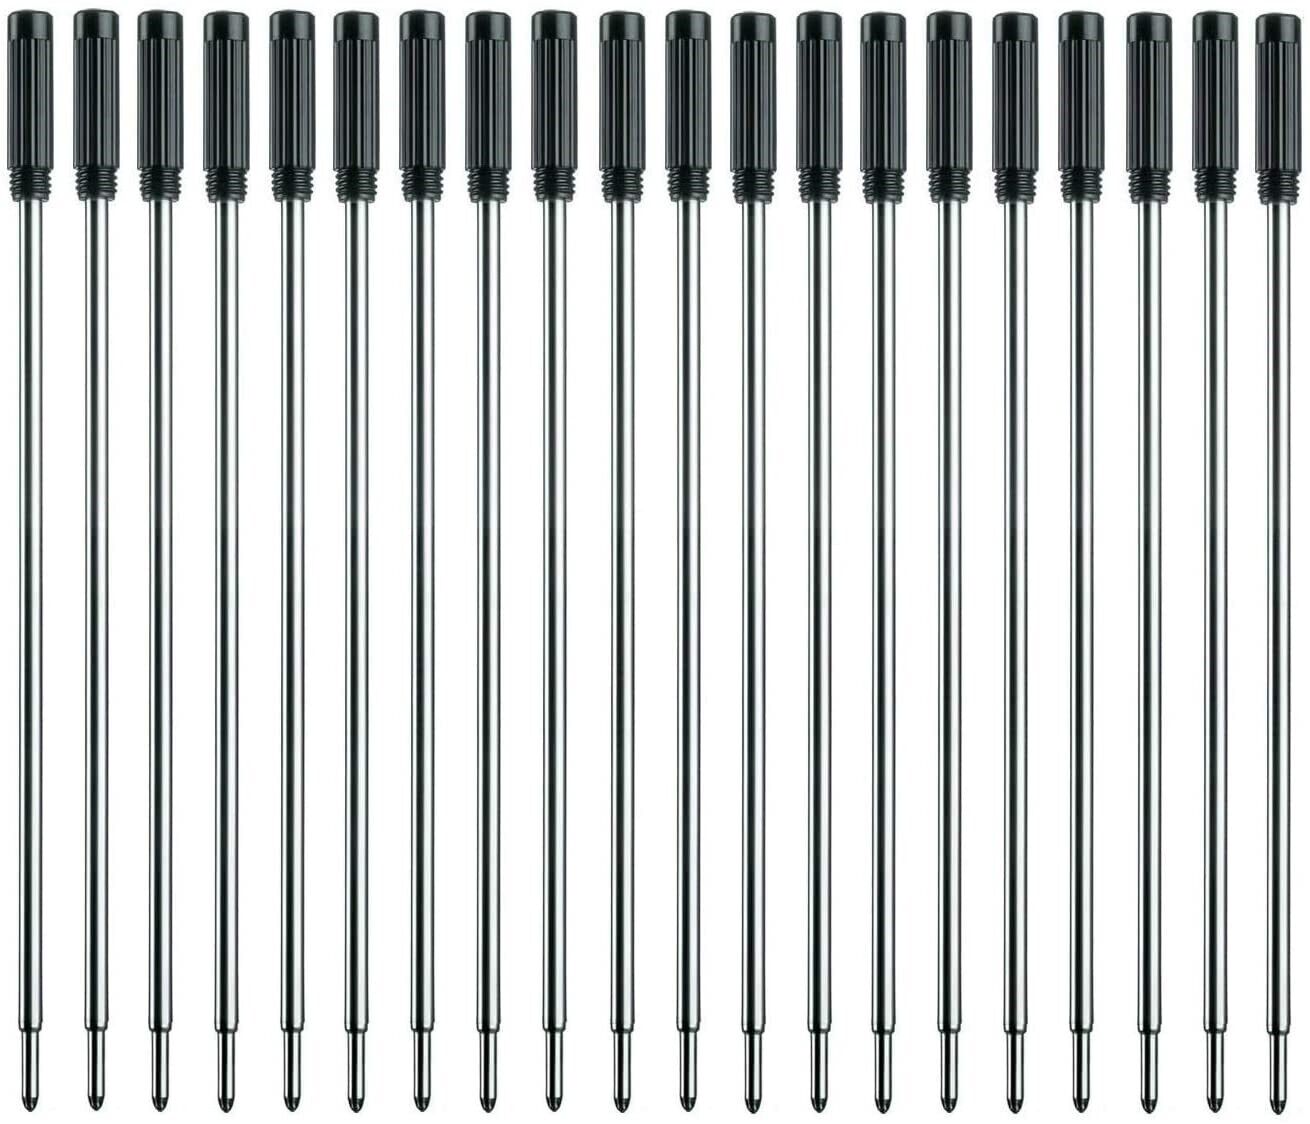 L:4.5 In Ballpoint Pen Refills for Cross Pens,Medium Point,Black Ink,Pack of 20